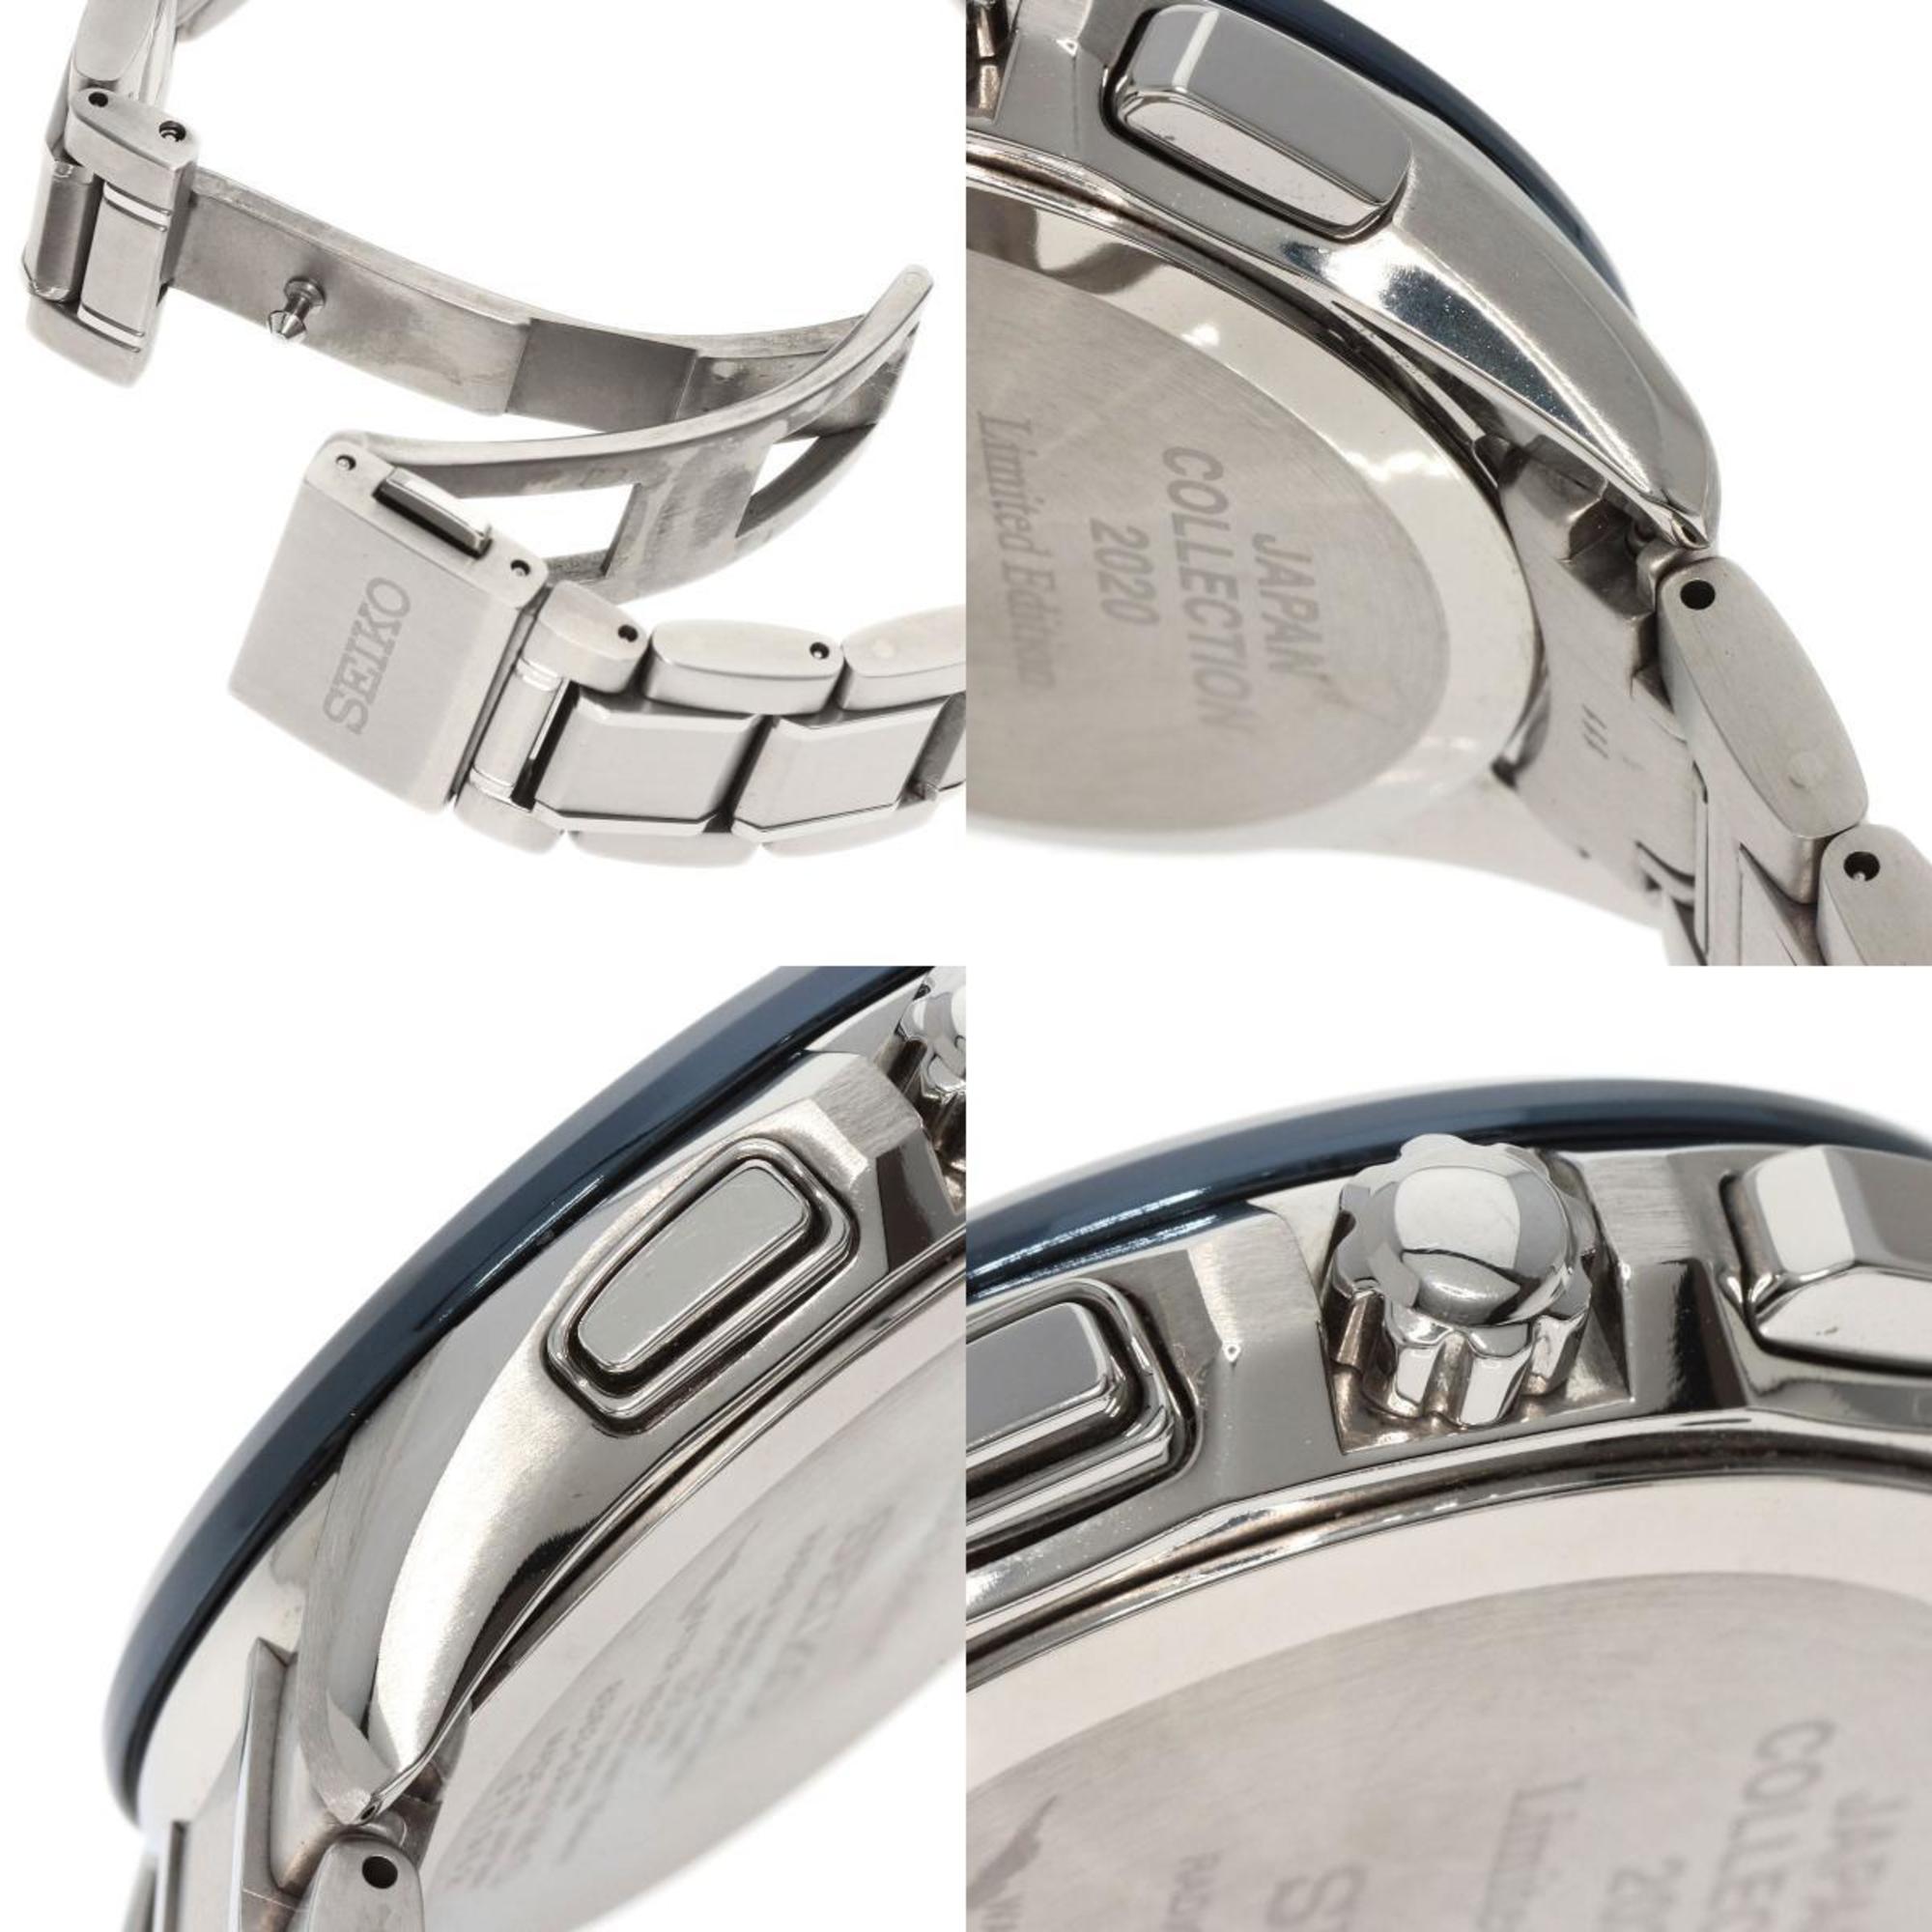 Seiko SAGA299 8B63-0AV0 Brightz World Time Watch Titanium Men's